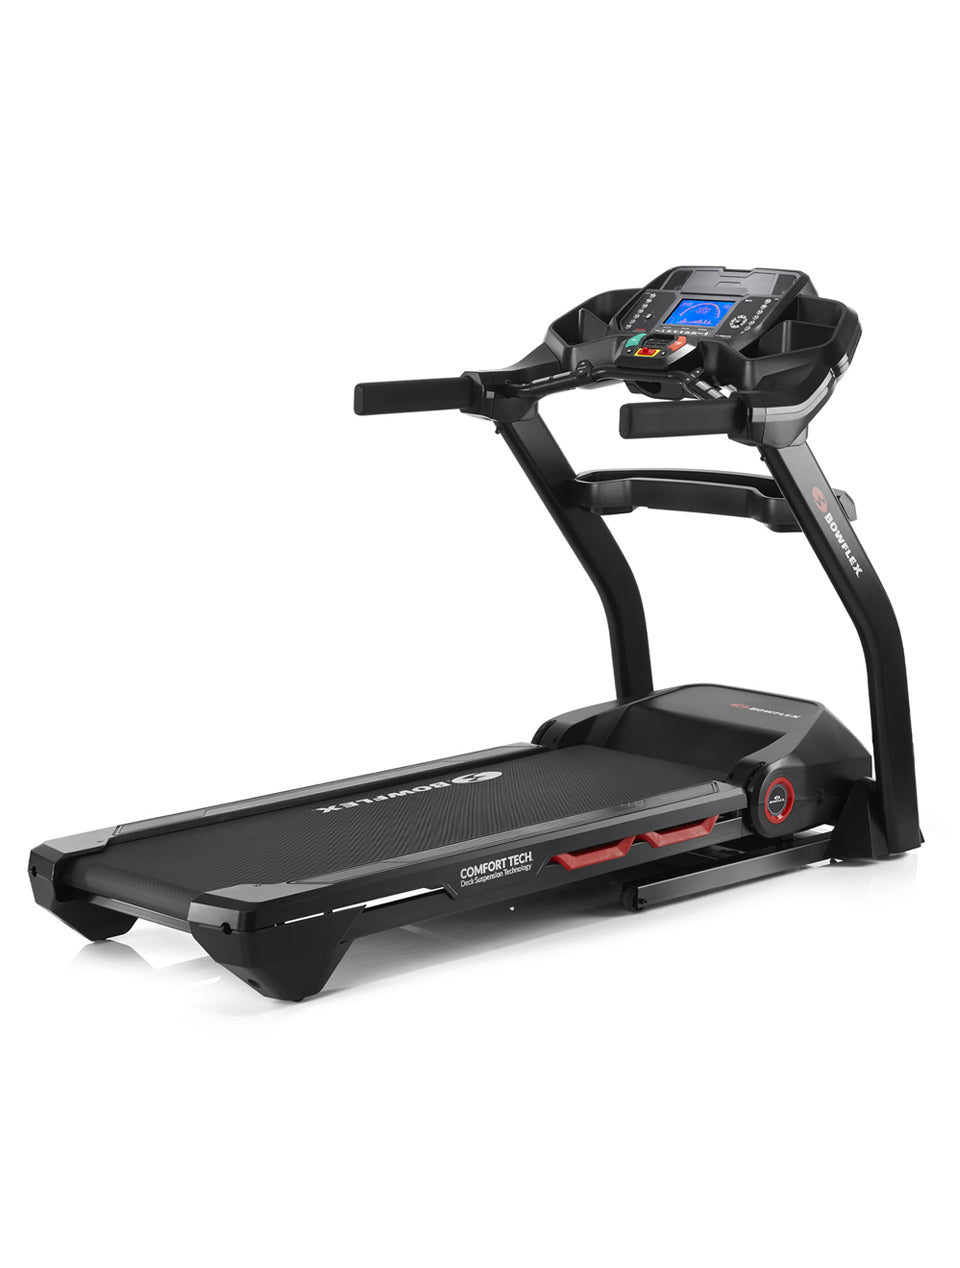 Bowflex Results Series BXT128 Treadmill